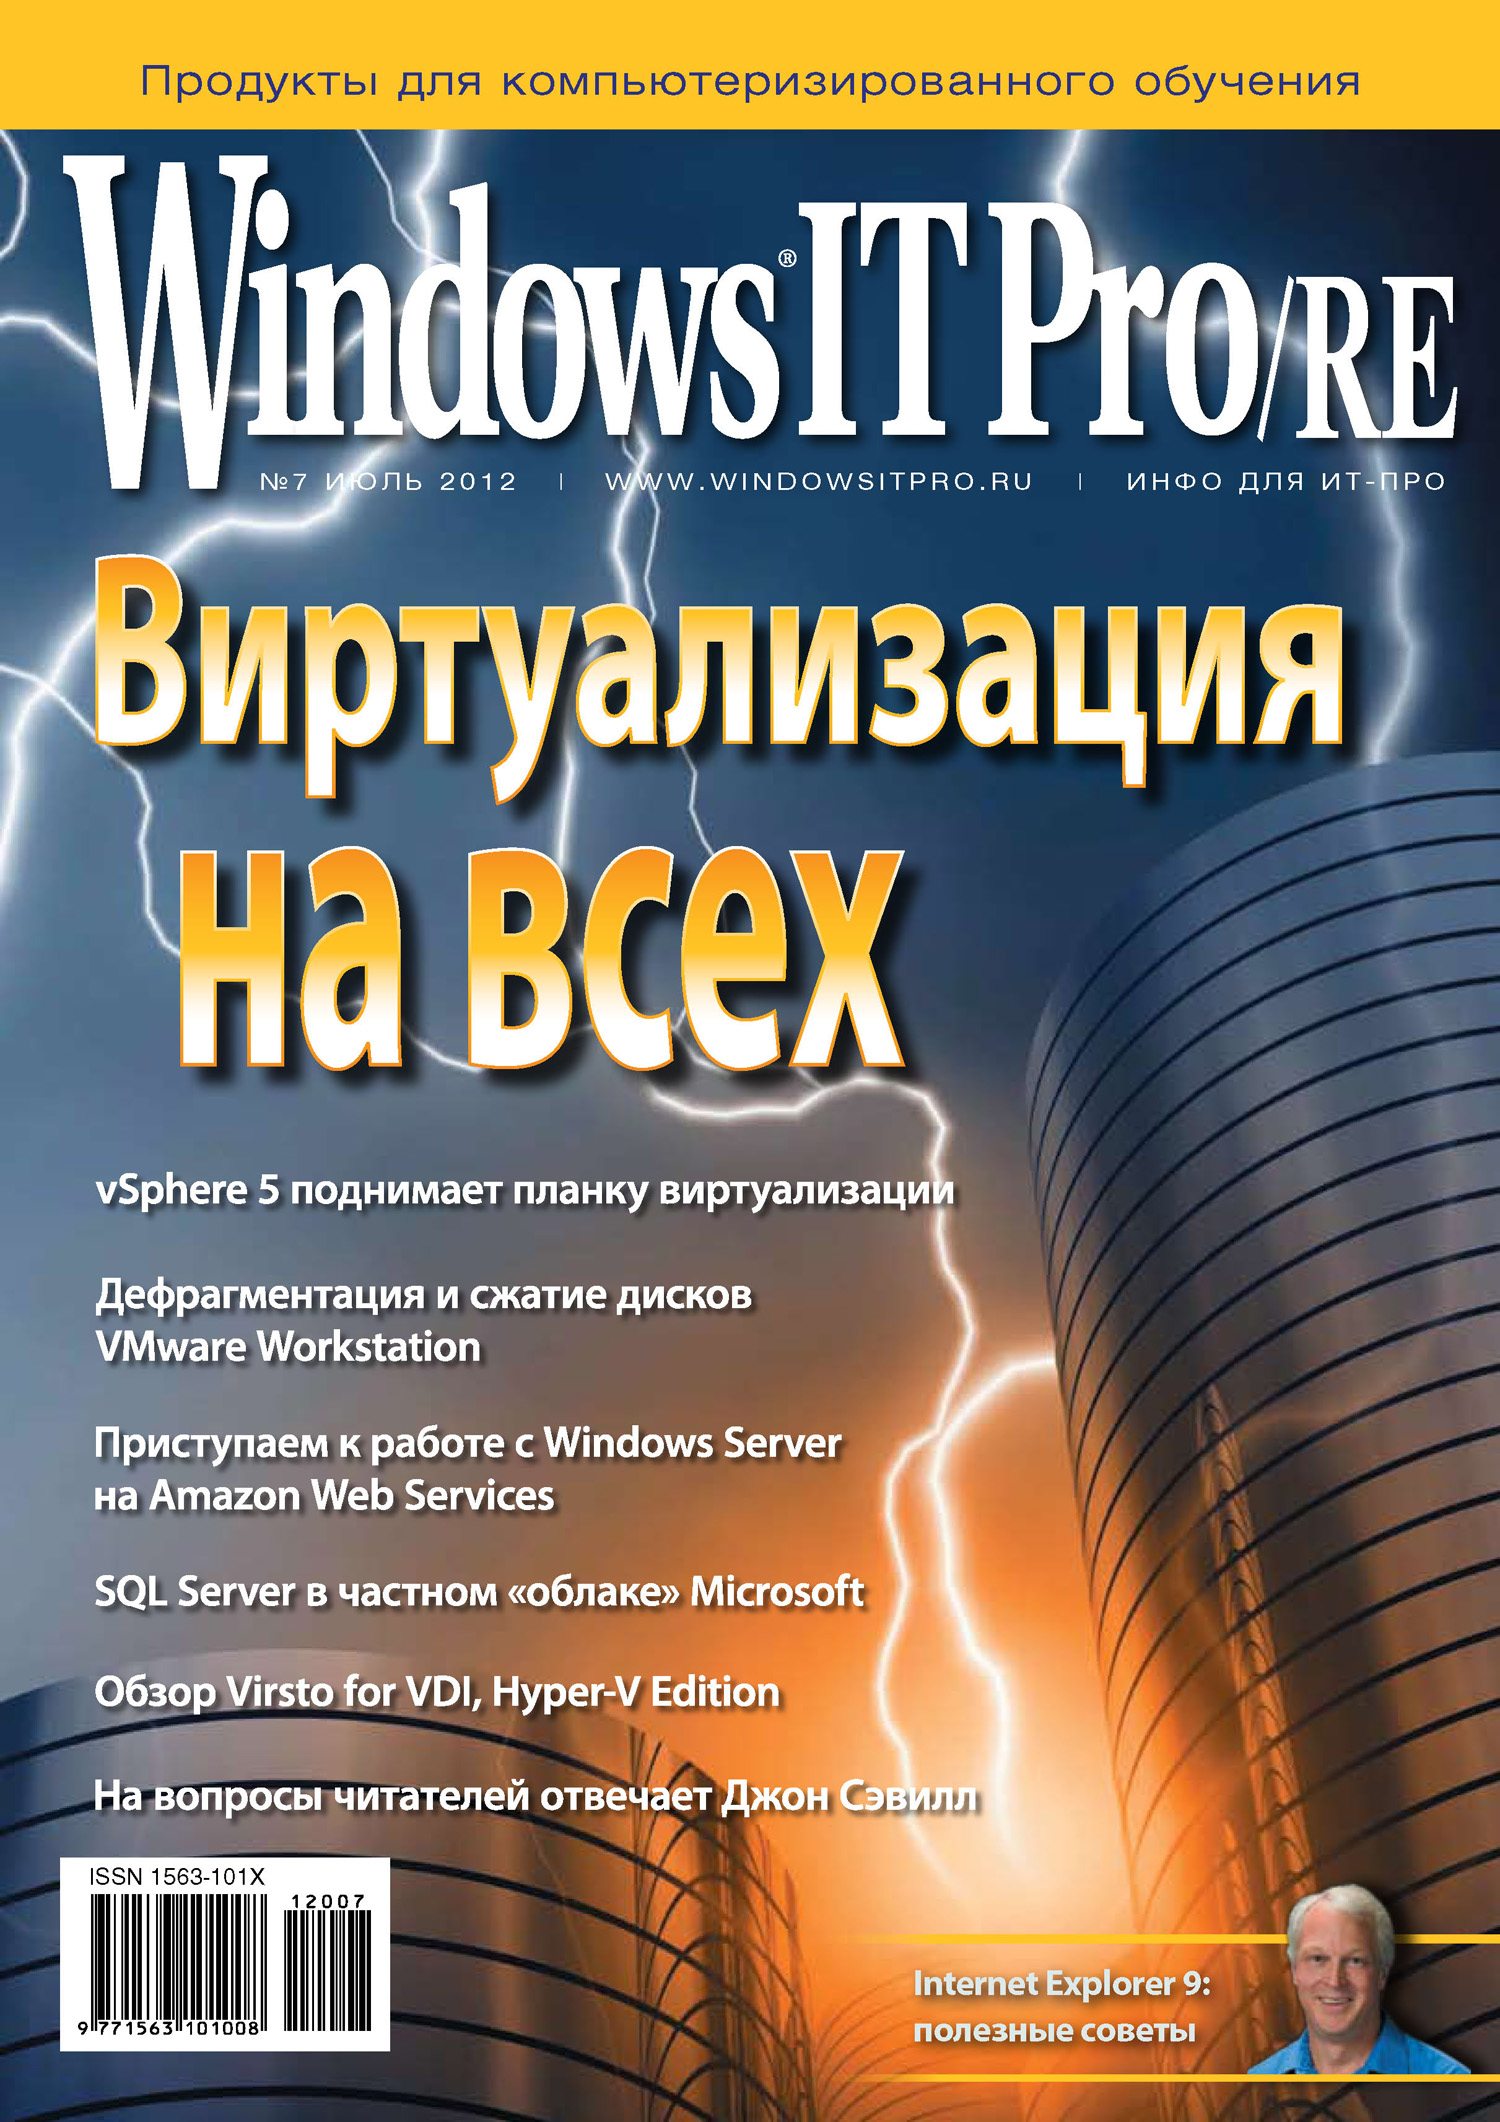 Книга Windows IT Pro 2012 Windows IT Pro/RE №07/2012 созданная Открытые системы, Открытые системы может относится к жанру компьютерные журналы, ОС и сети. Стоимость электронной книги Windows IT Pro/RE №07/2012 с идентификатором 3749005 составляет 484.00 руб.